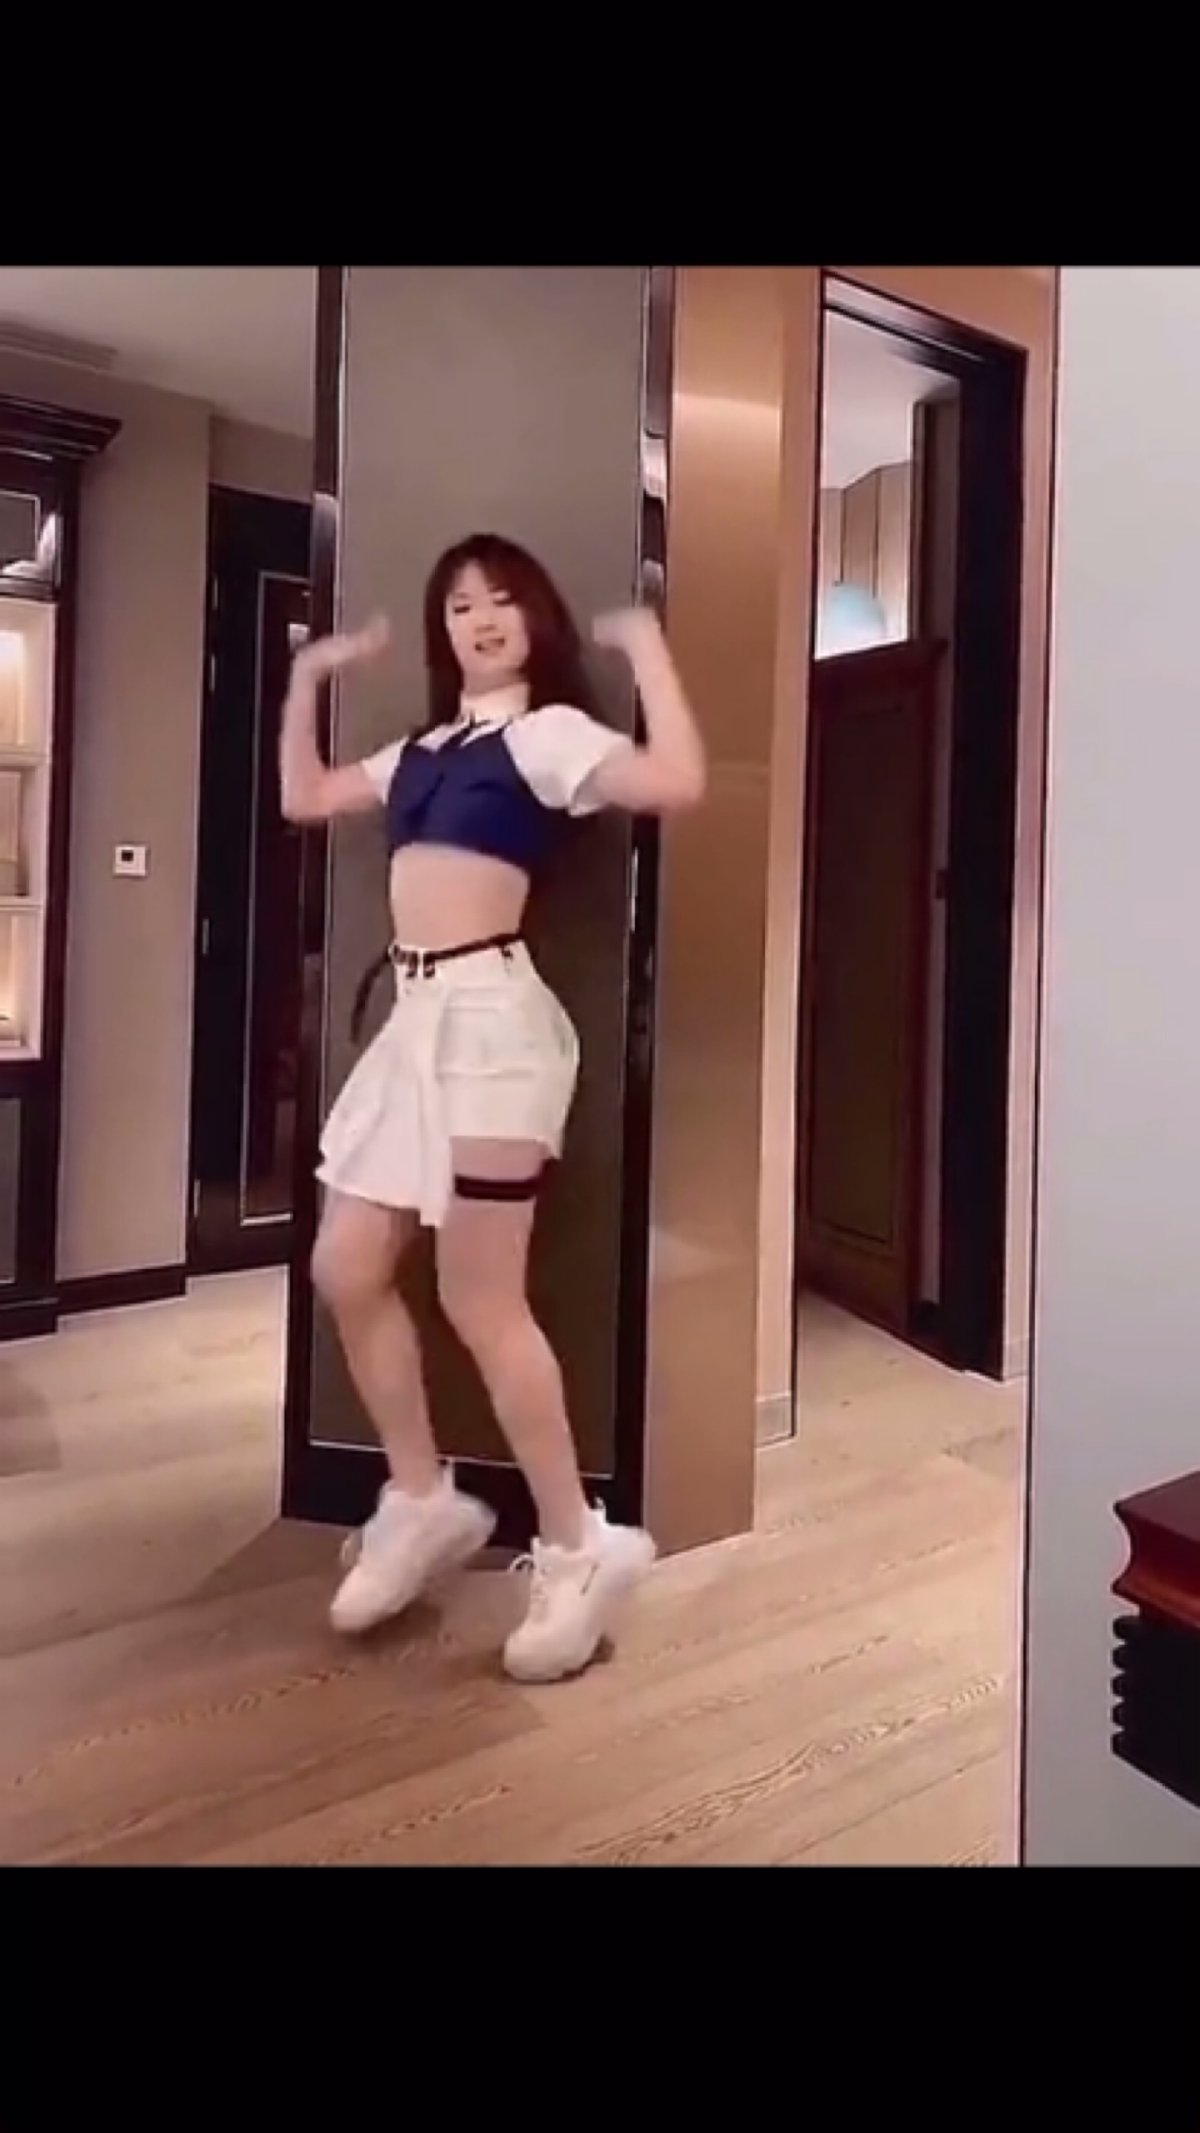 중국 인터넷에 올라온 야오안나 춤 연습 영상